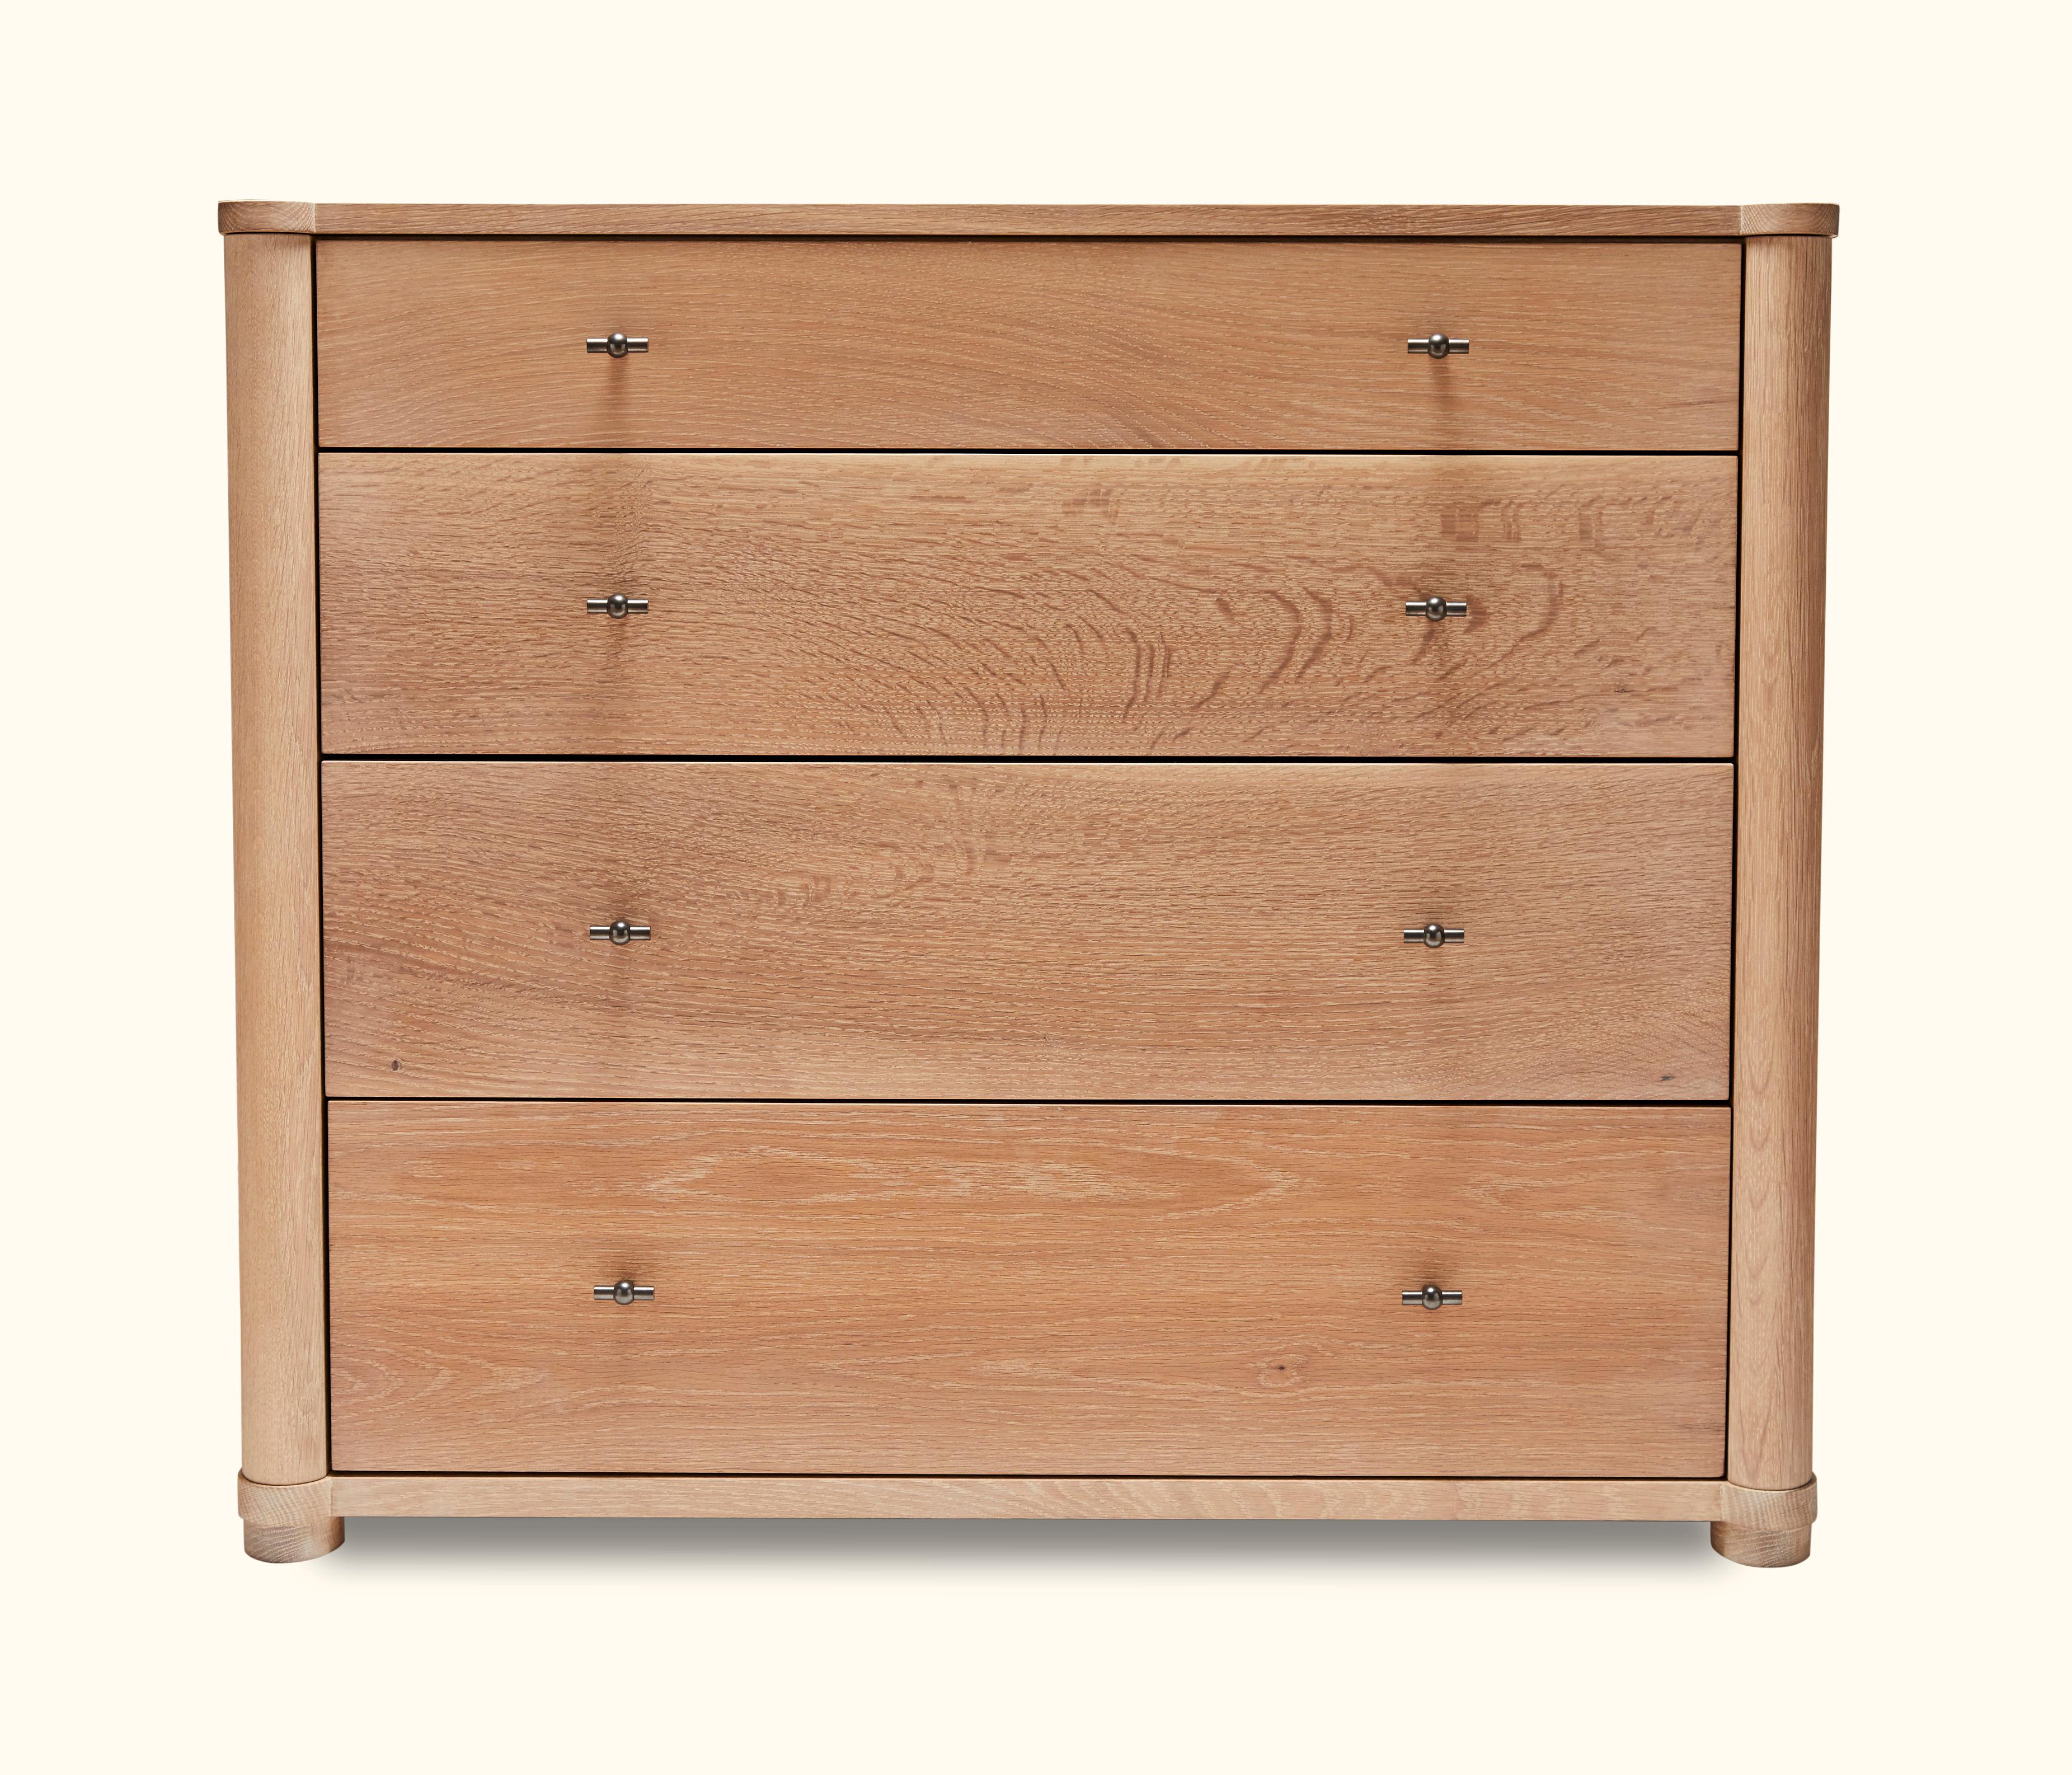 Hull 4-drawer dresser by O&G Studio.